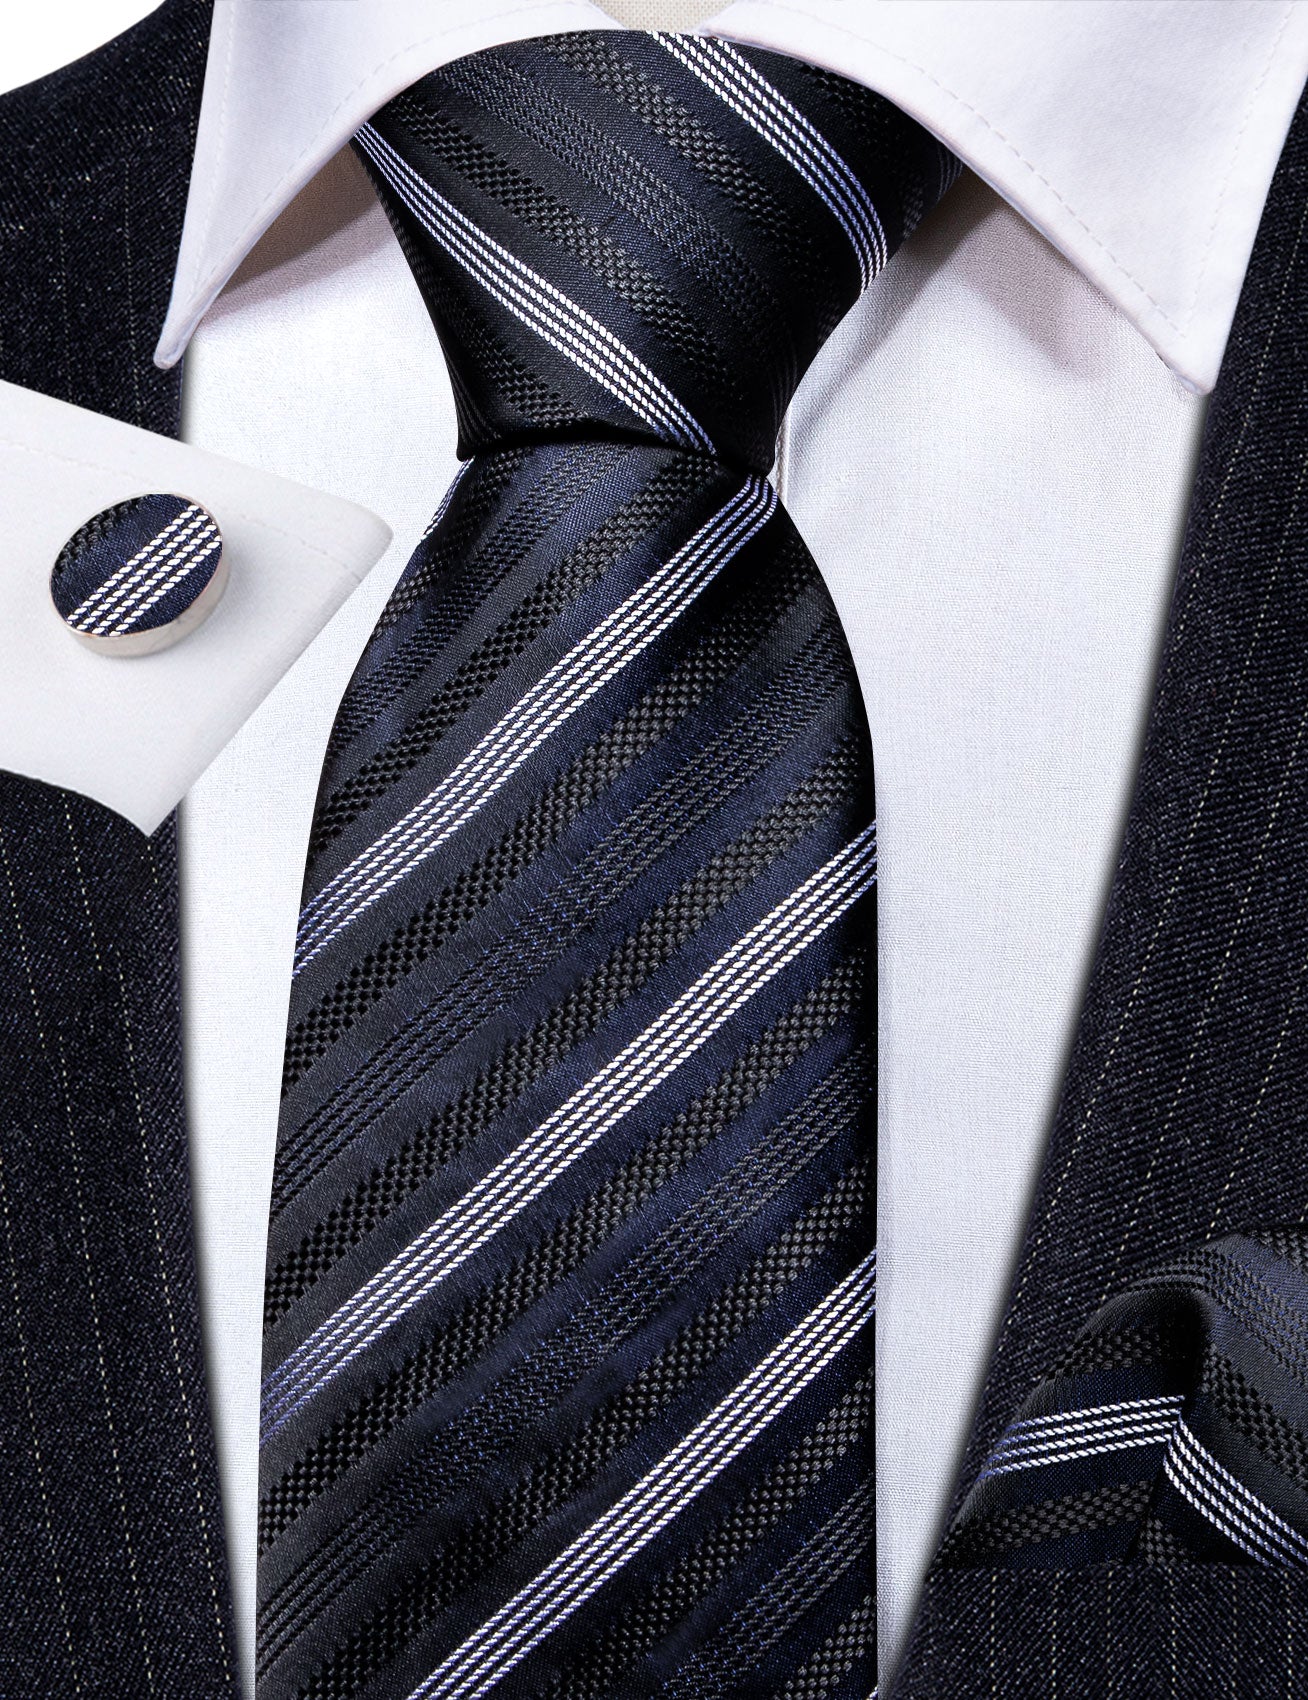 Black Grey Striped Silk Tie Handkerchief Cufflinks Set